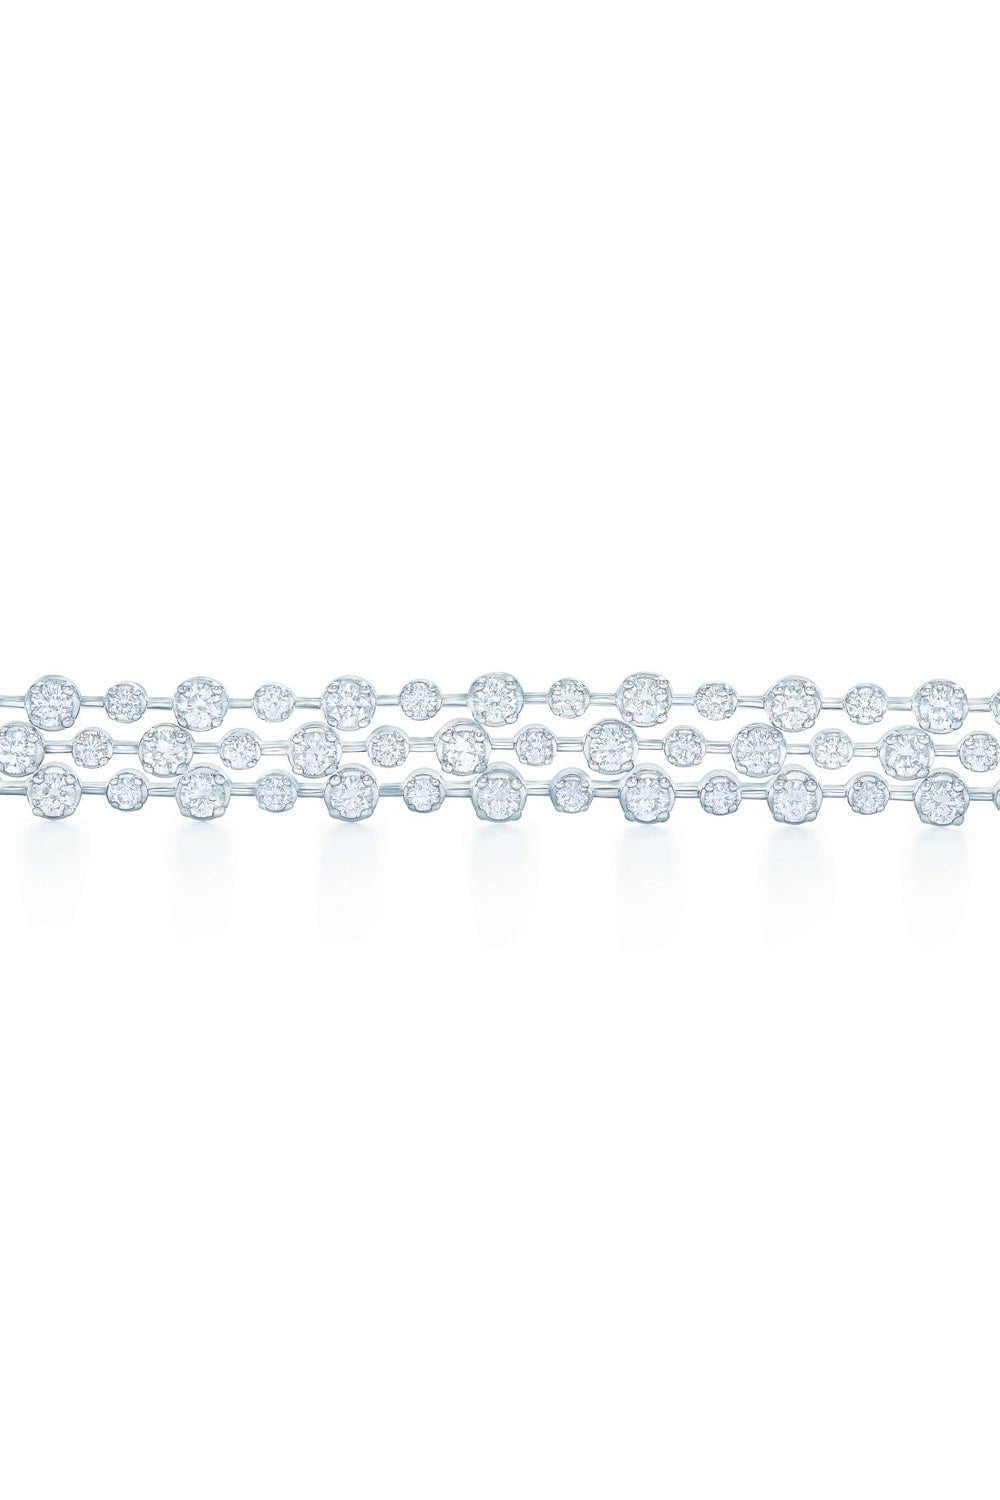 Starry Night 3 Row Diamond Bracelet JEWELRYFINE JEWELBRACELET O KWIAT   